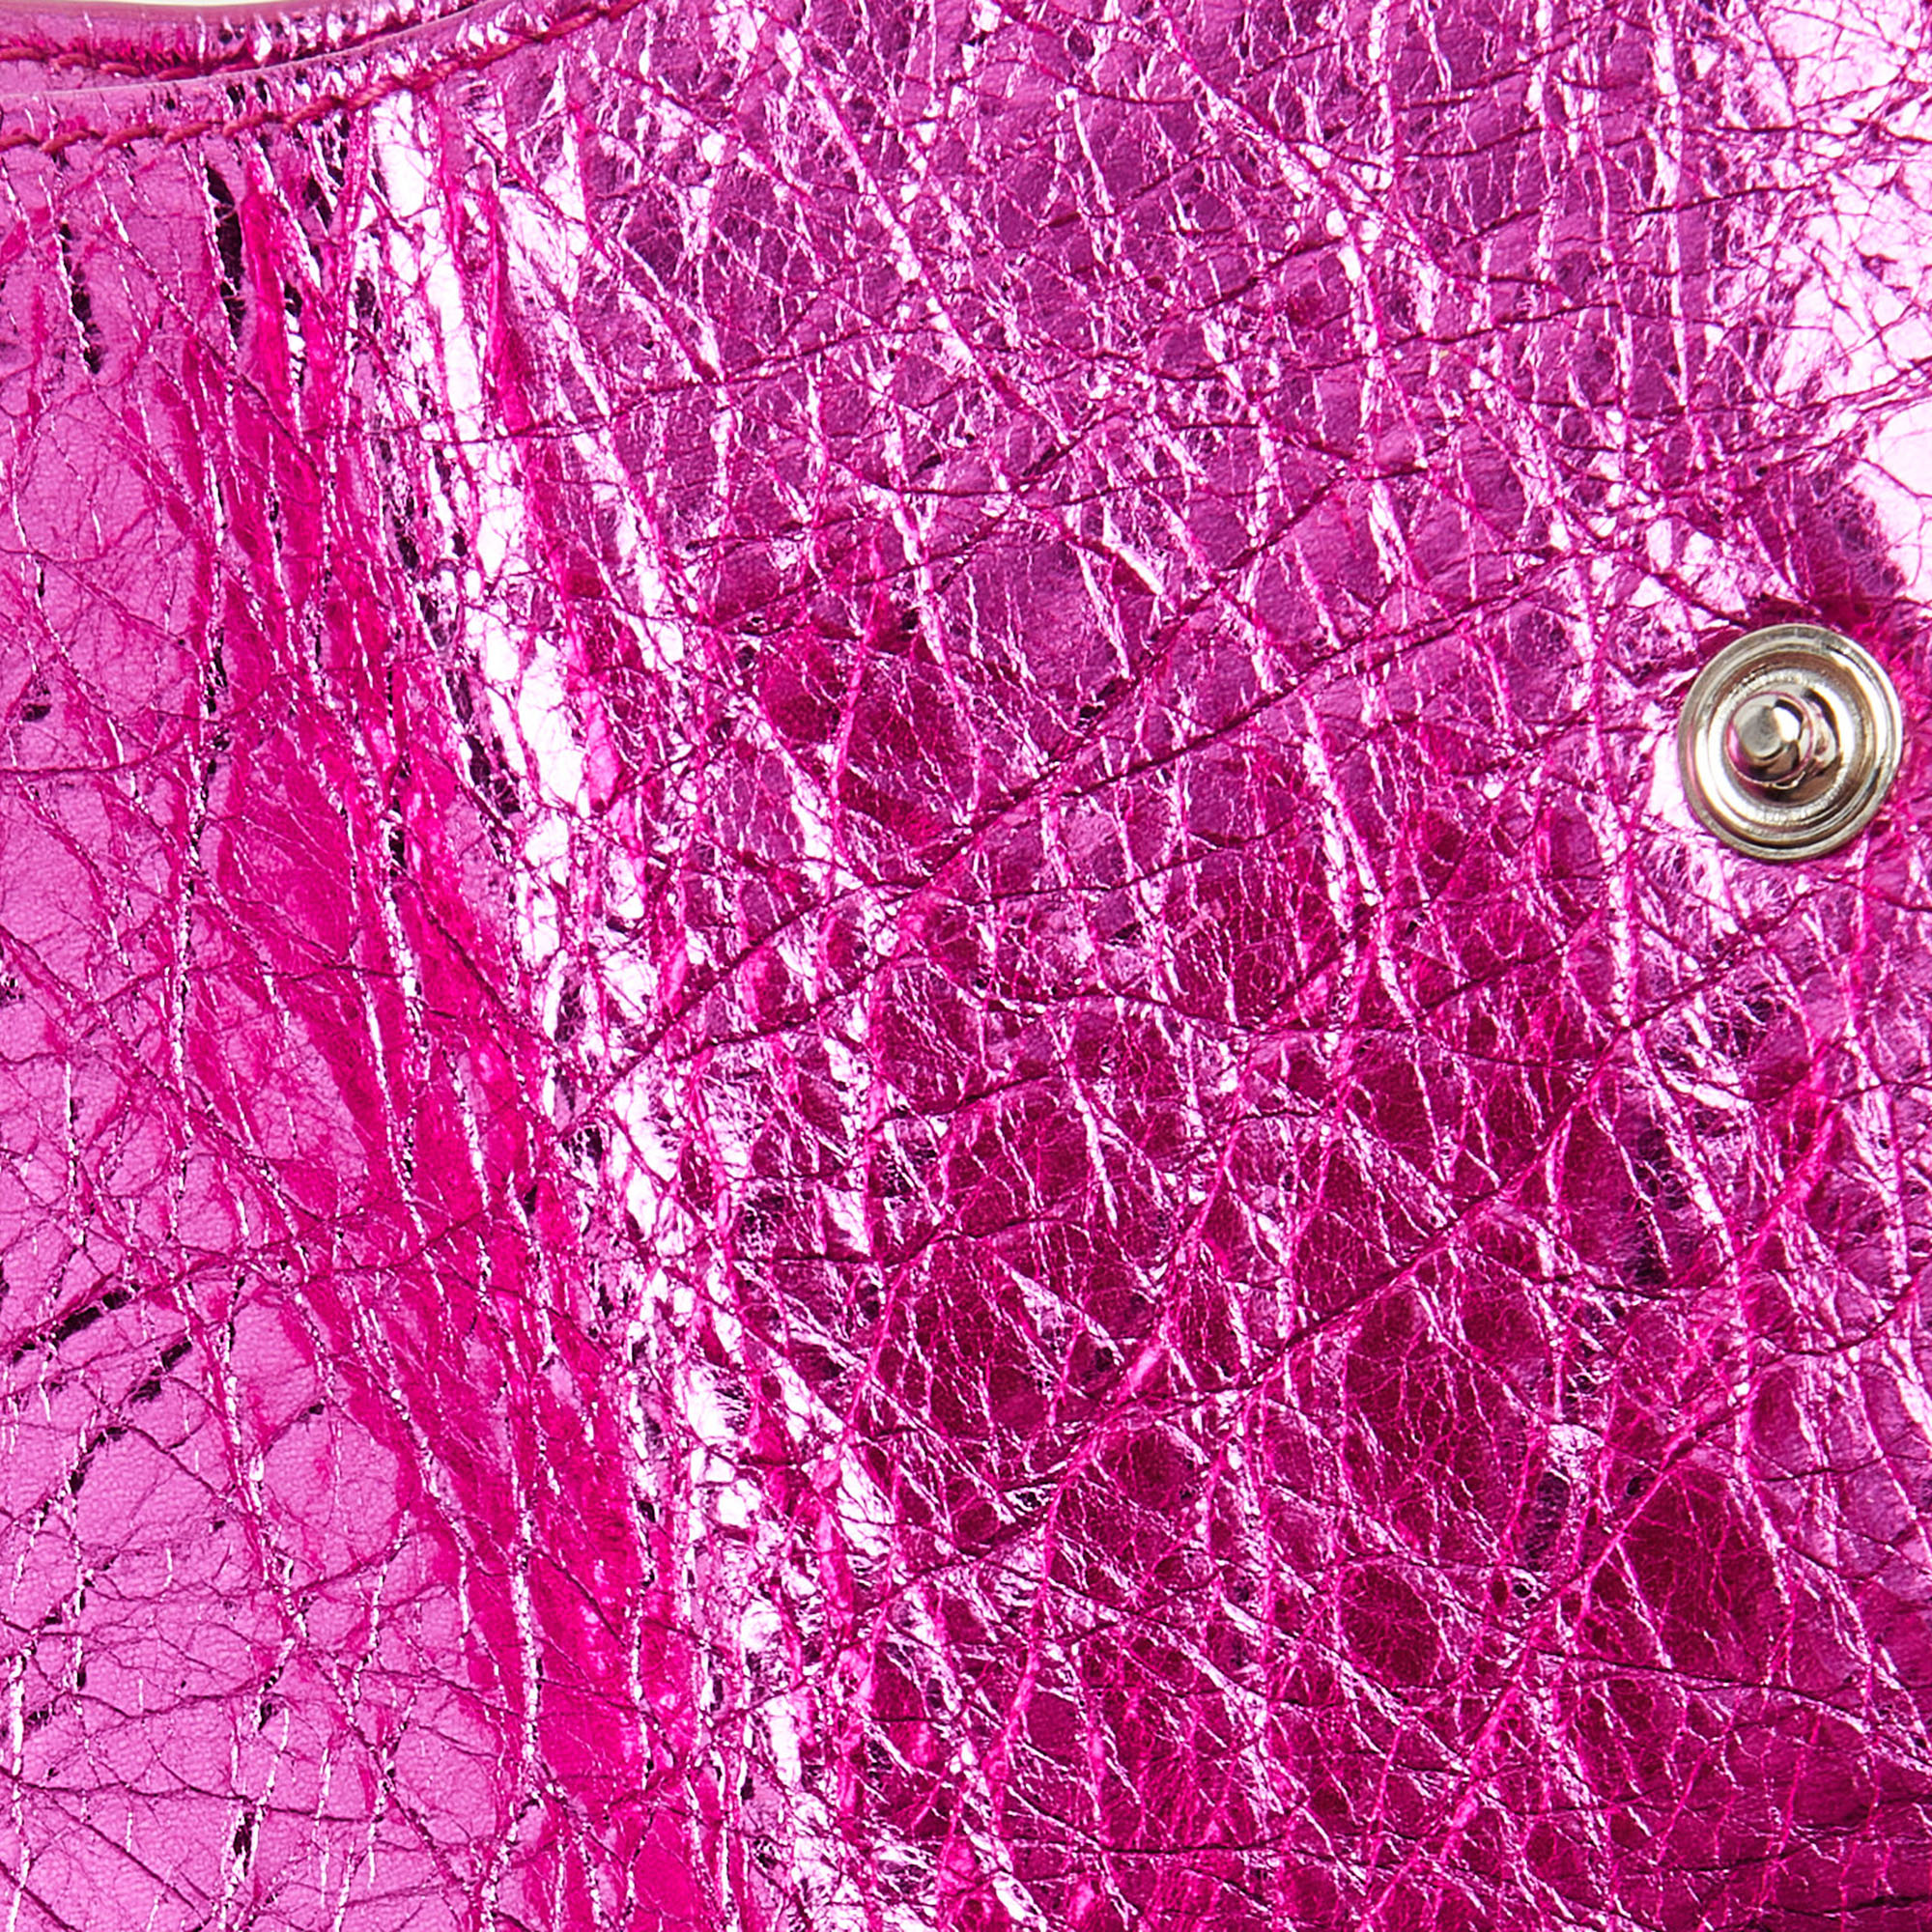 Balenciaga Metallic Pink Leather Mini Papier Wallet